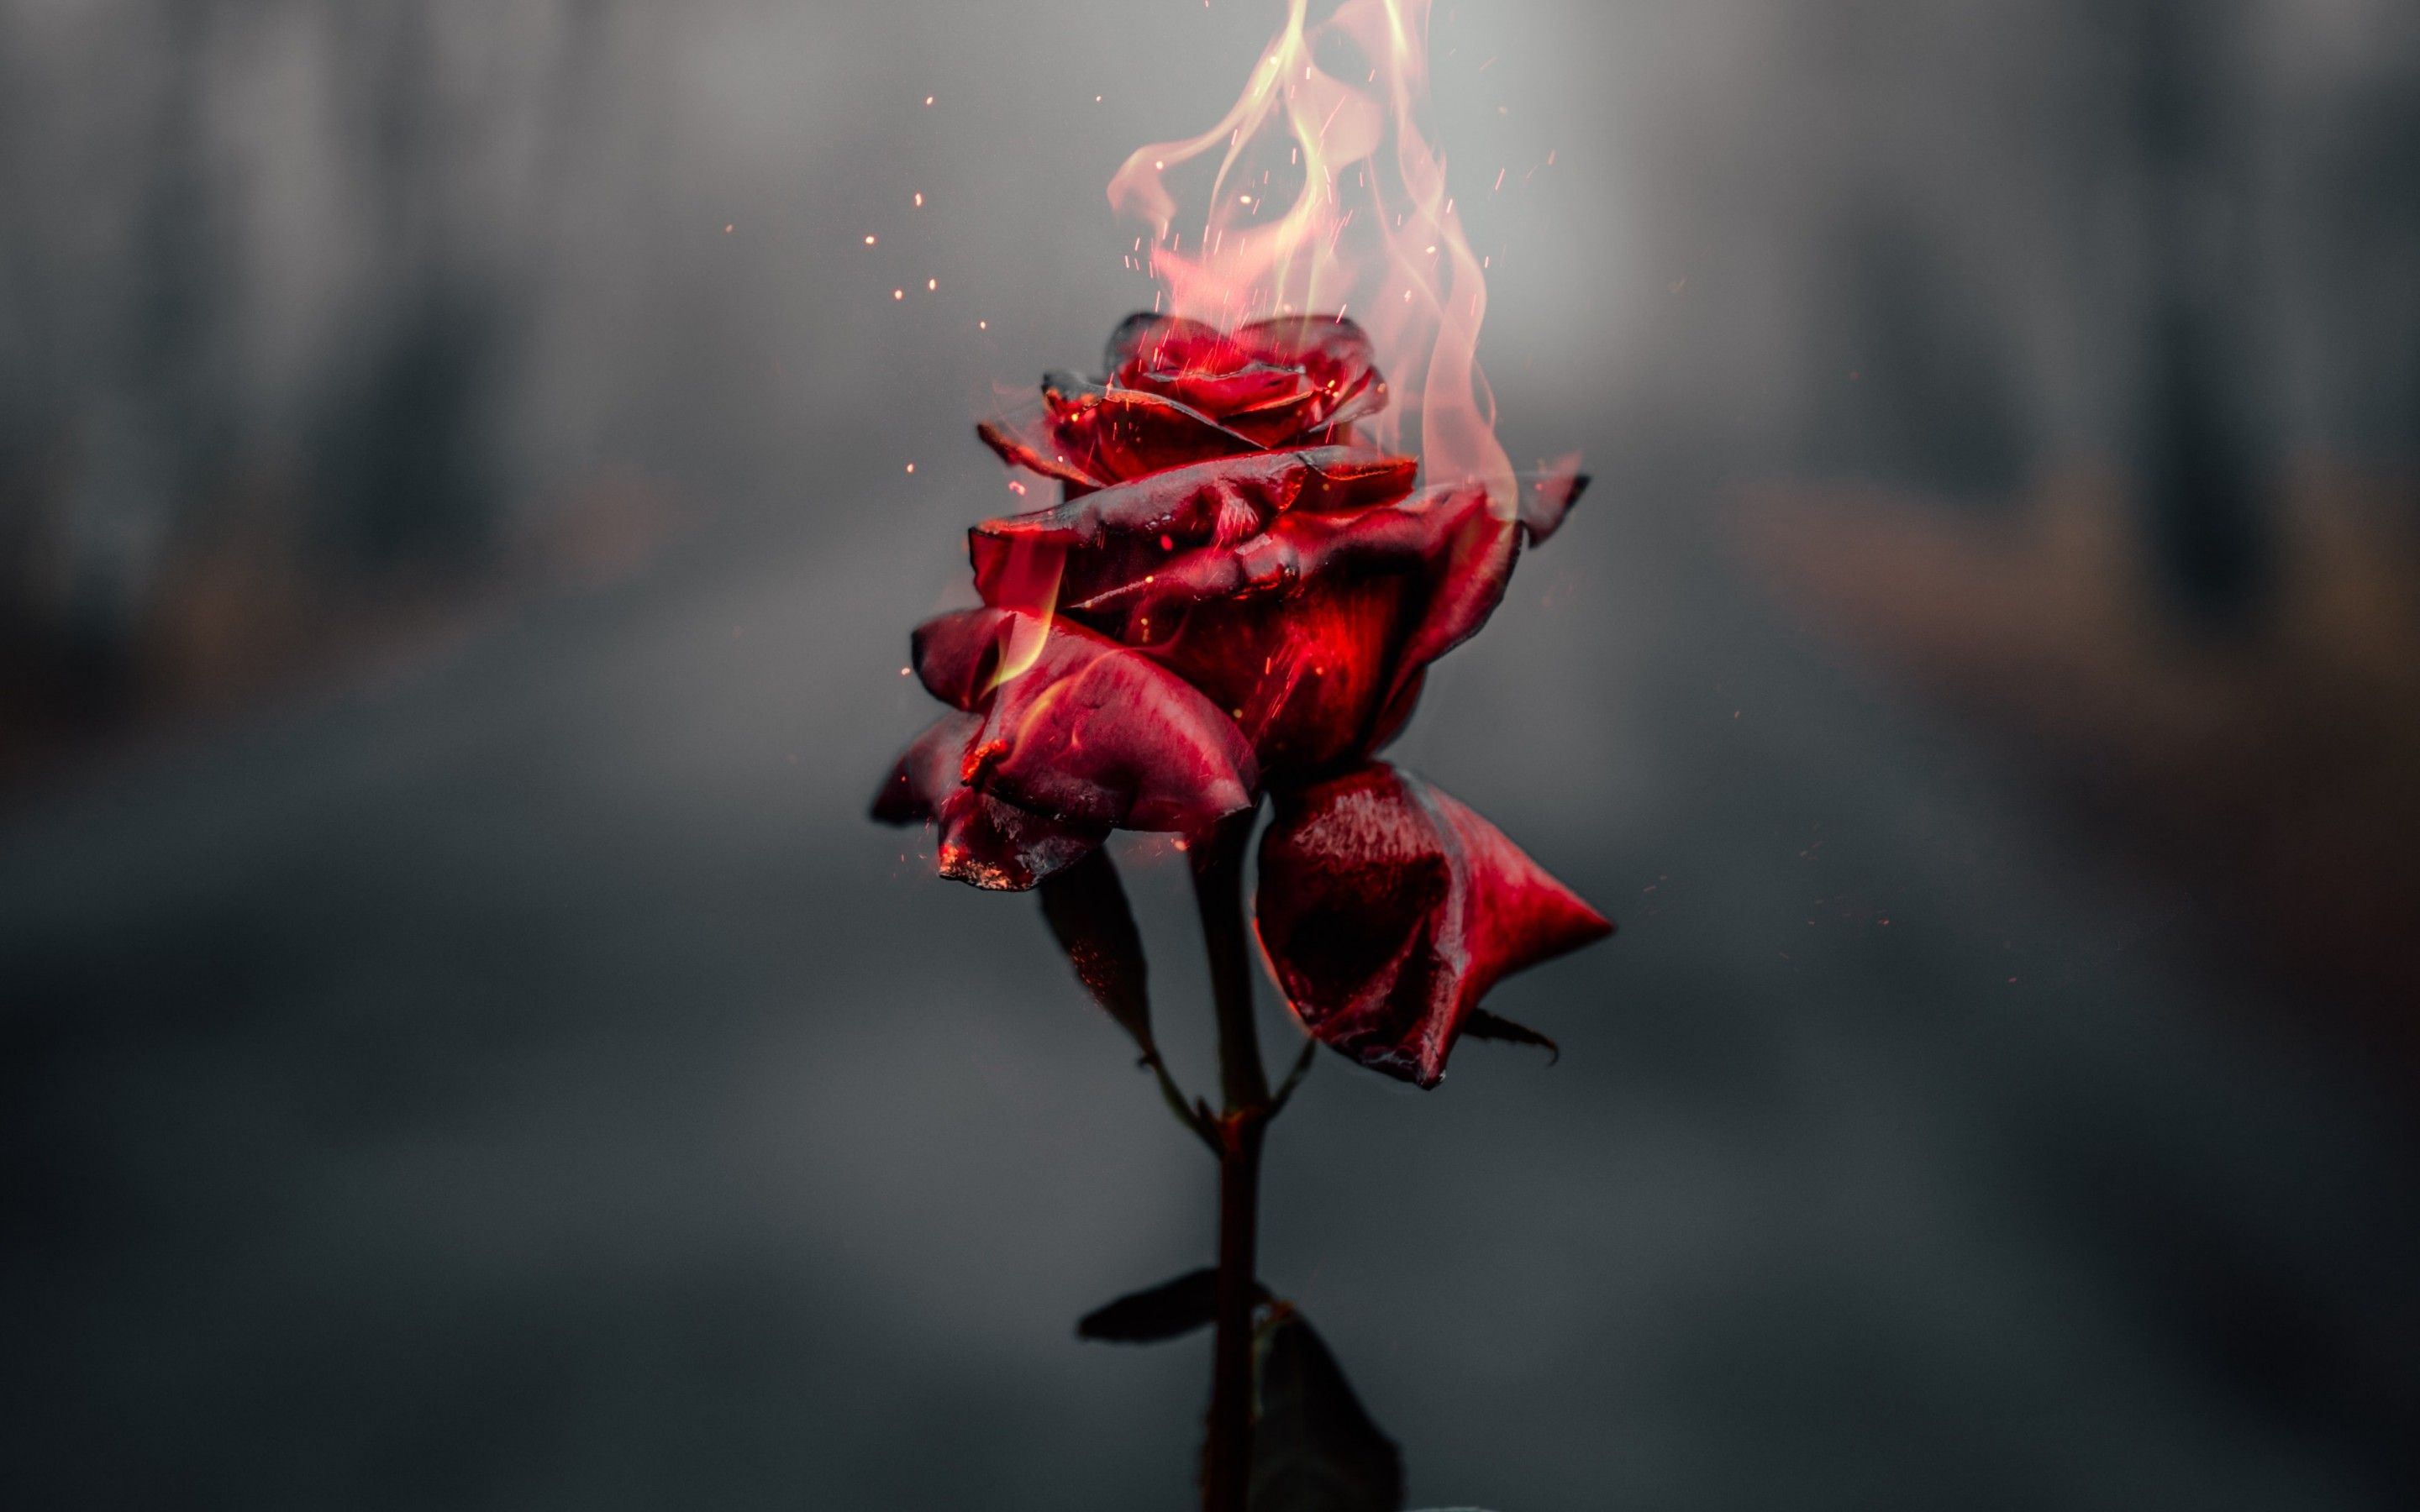 Rose flower 4K Wallpaper, Fire, Burning, Dark, Flowers